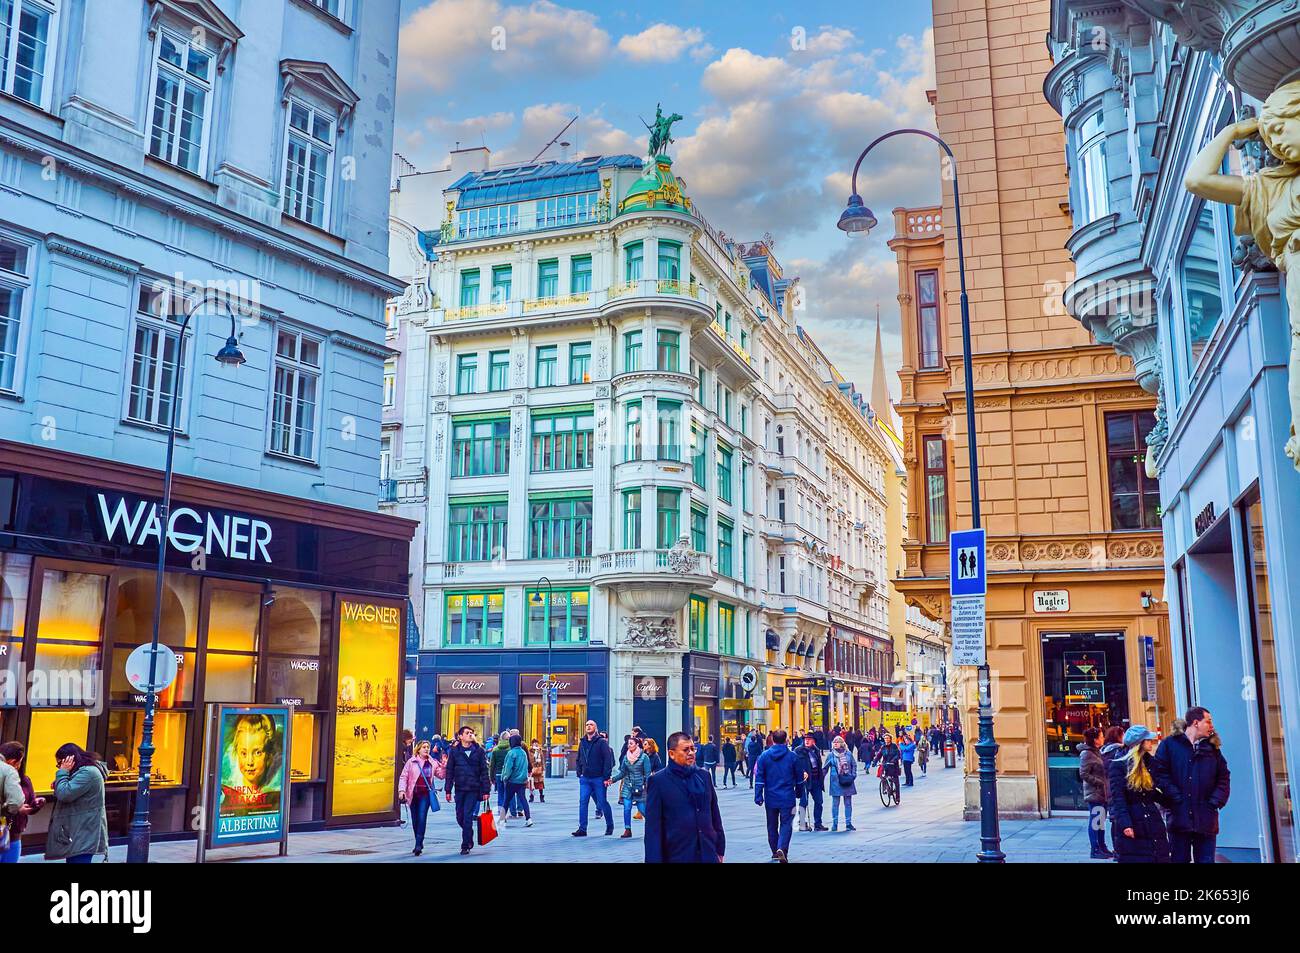 VIENA, AUSTRIA - 17 DE FEBRERO de 2019: Las calles abarrotadas del casco antiguo, llenas de tiendas, boutiques y restaurantes, el 17 de febrero en Viena, Austria Foto de stock